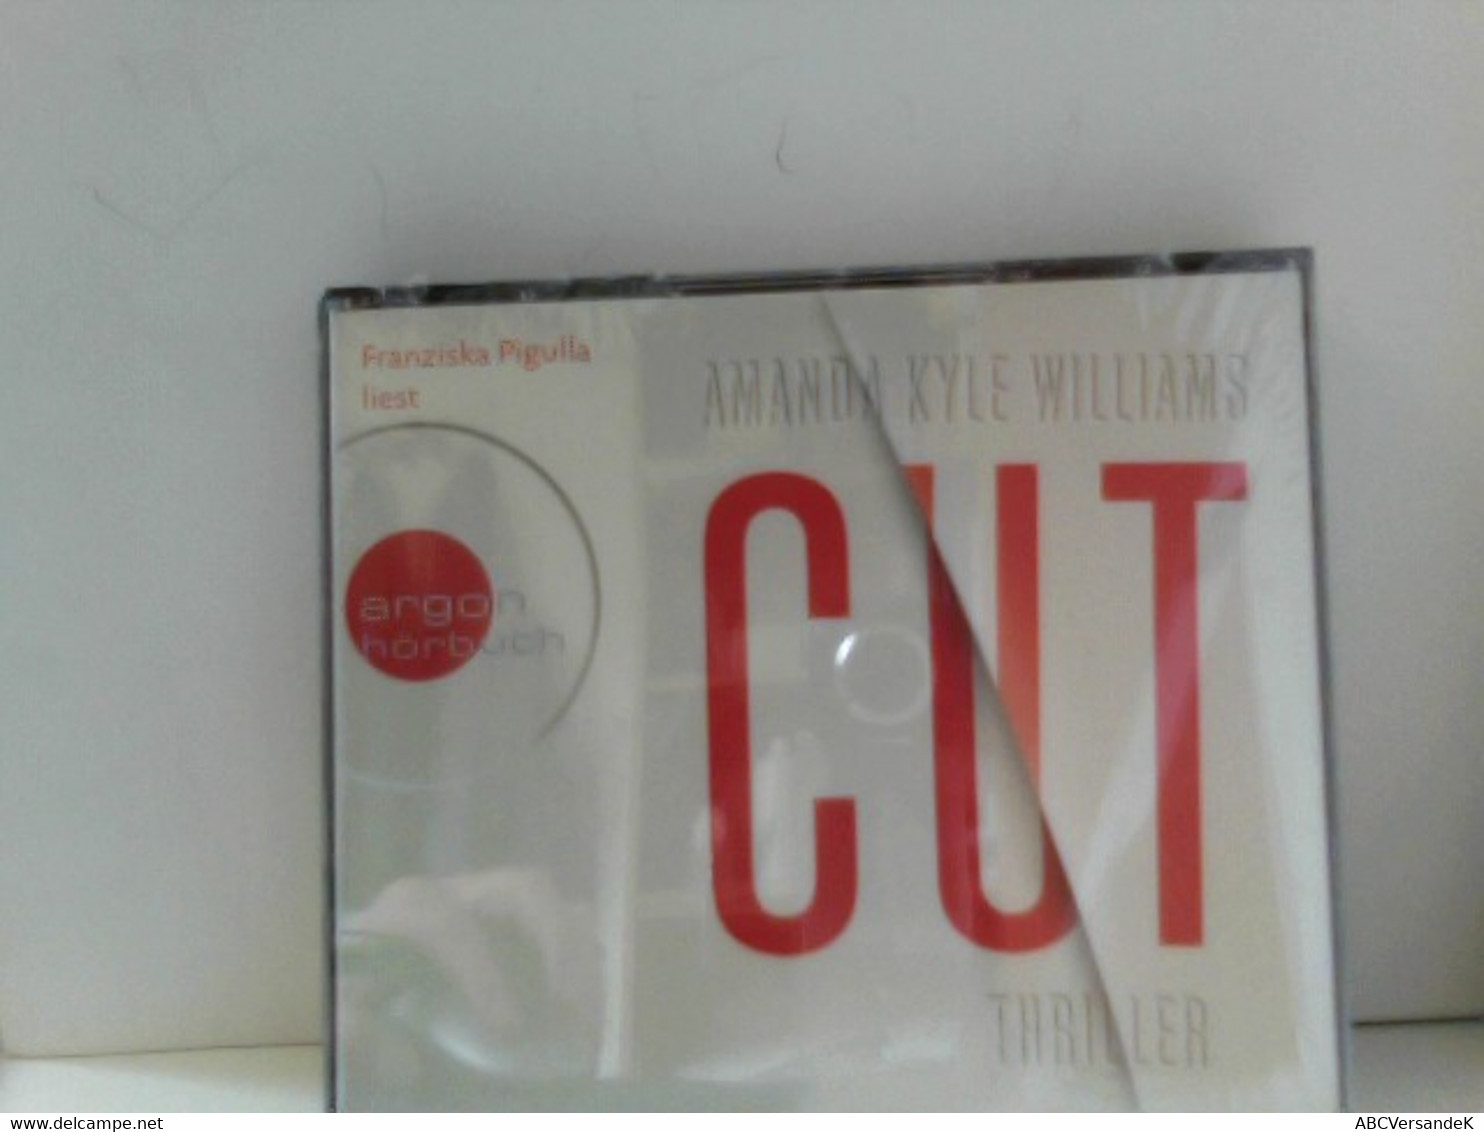 Cut - CD